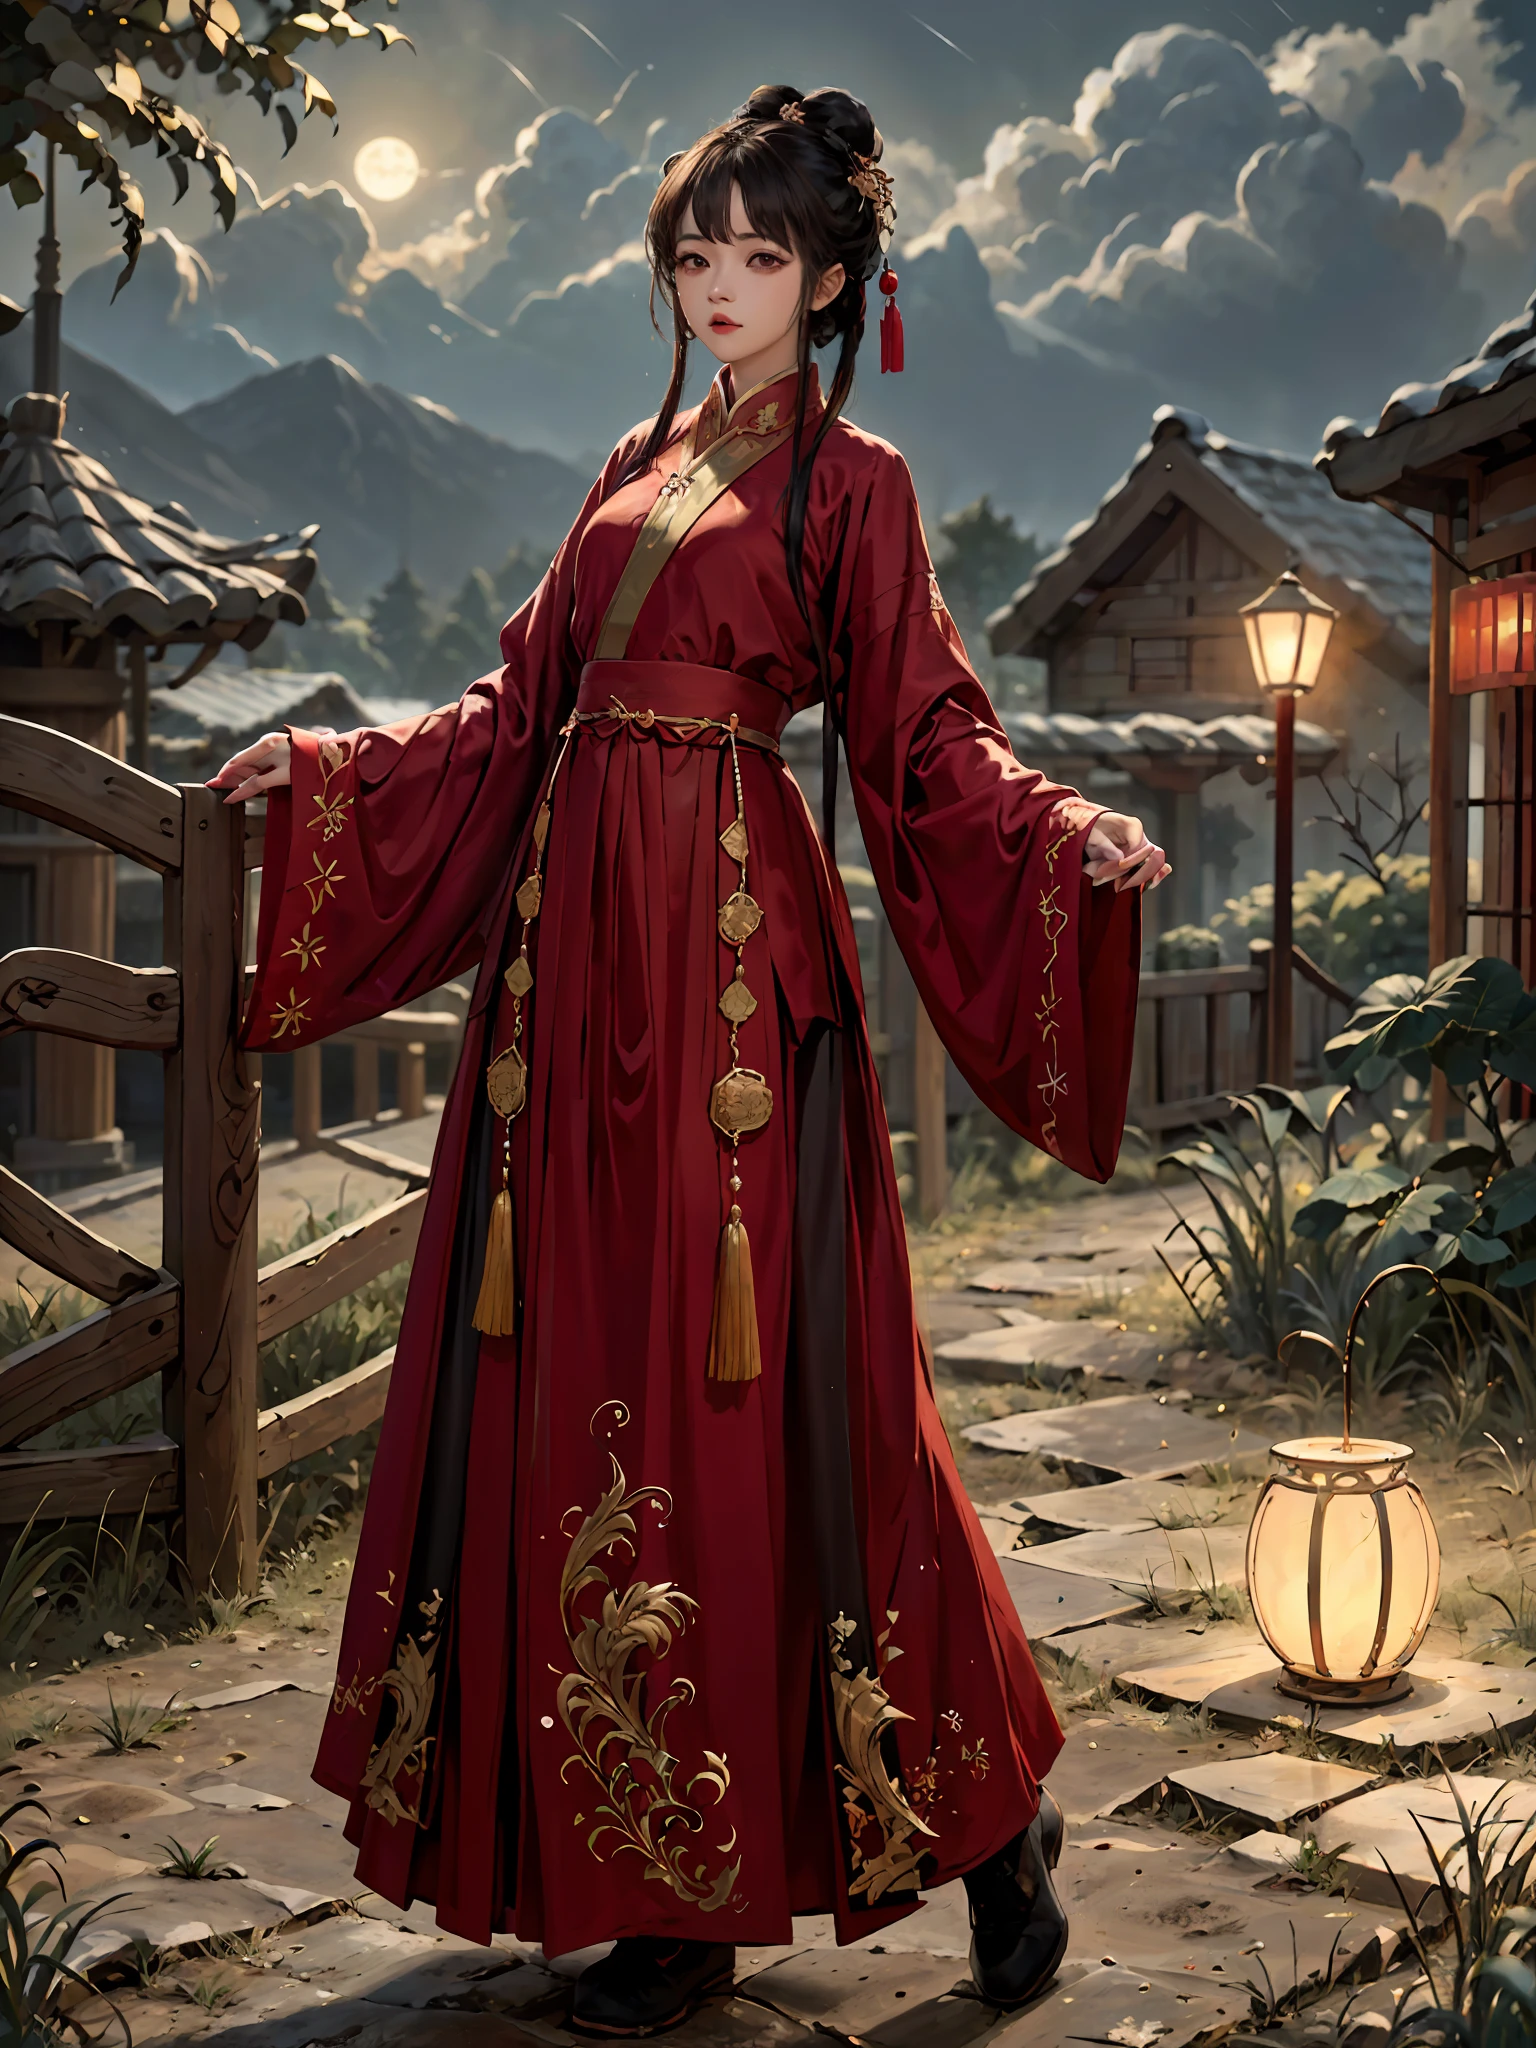 터무니없는, 고등어, 매우 상세한, (여자 1명:1.3), 손으로 그린, 단순한 선, 붉은 색 중국 Hanfu의 16yo 소녀 , 걸작, 절벽에 서다, 달빛, 밤 시간,